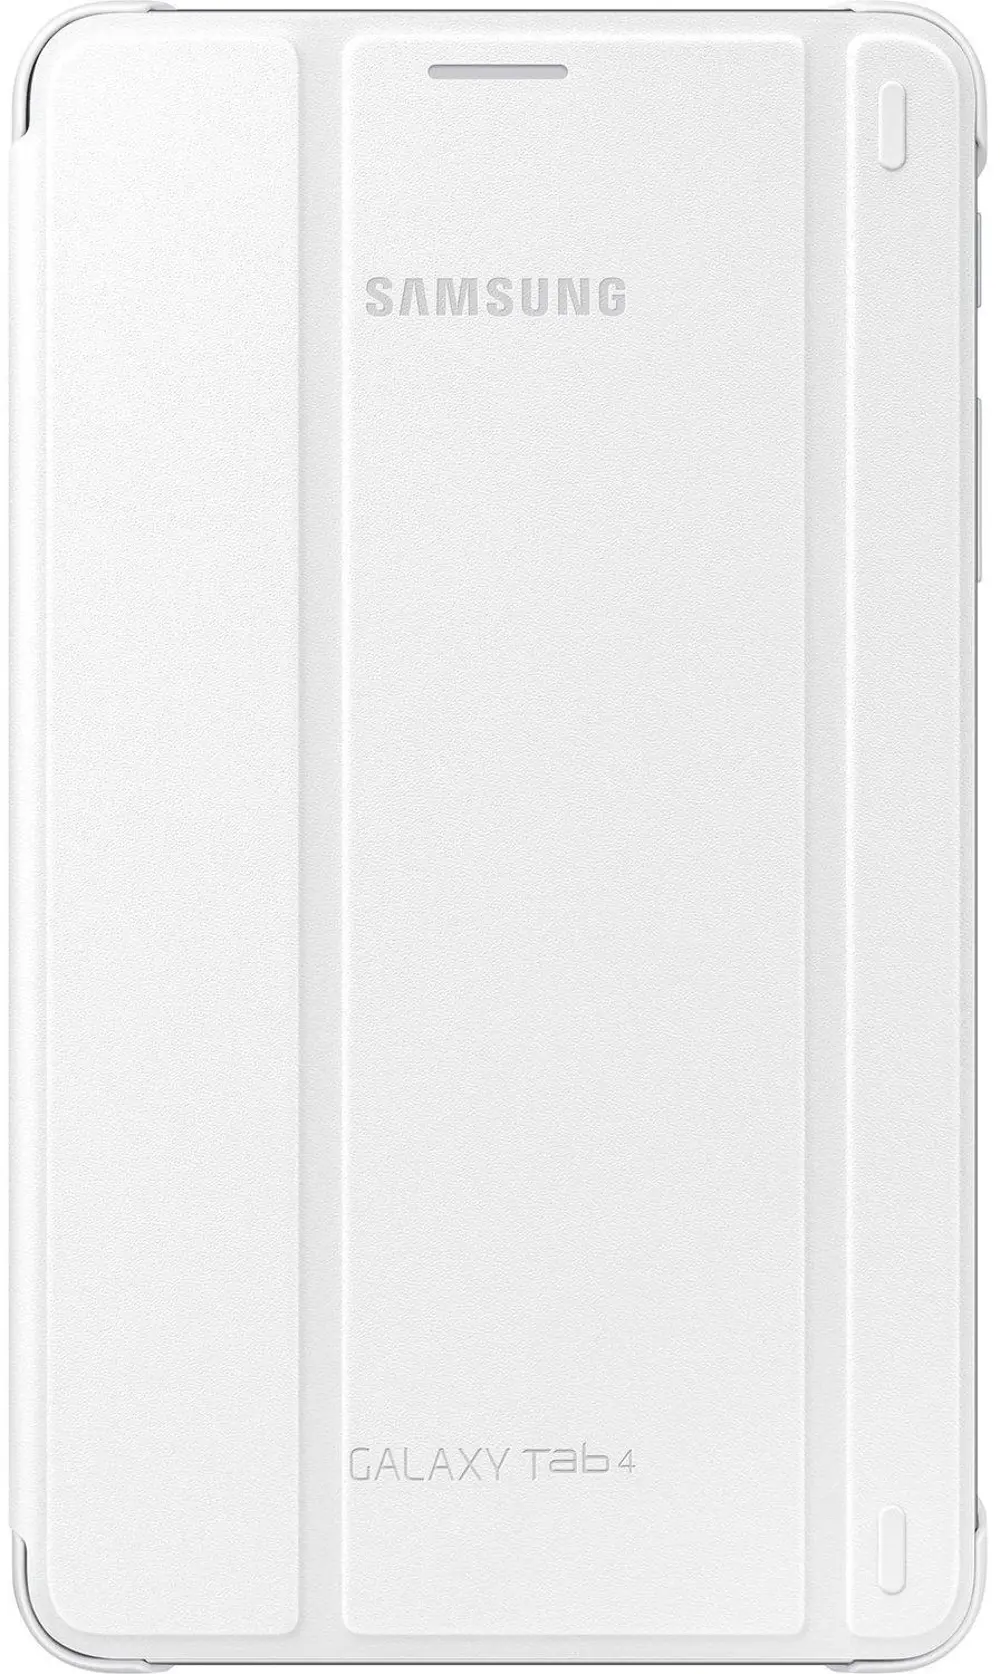 EF-BT230WWEGUJ Samsung Book Cover for Galaxy Tab 4 7.0 - White-1